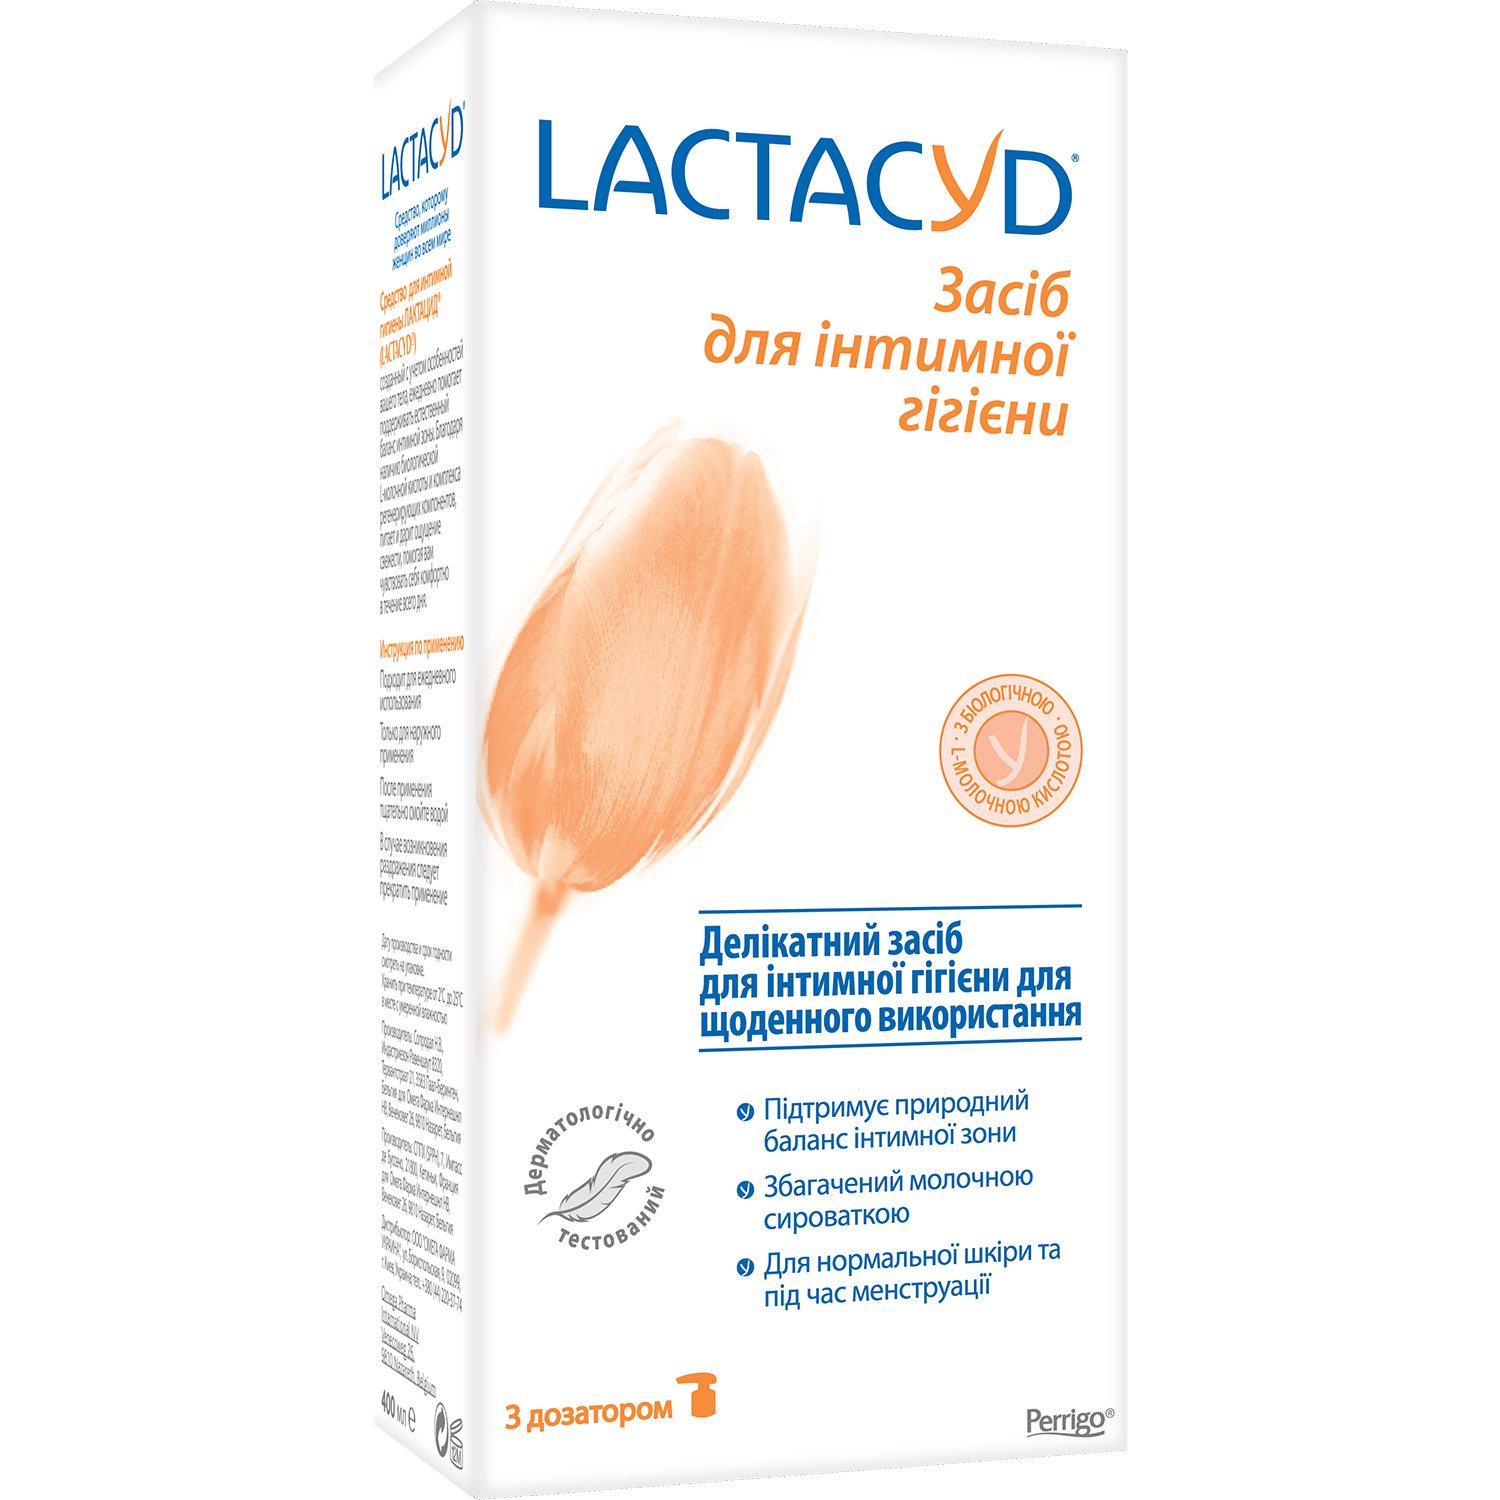 Засіб для інтимної гігієни Lactacyd, з дозатором, 400 мл - фото 2